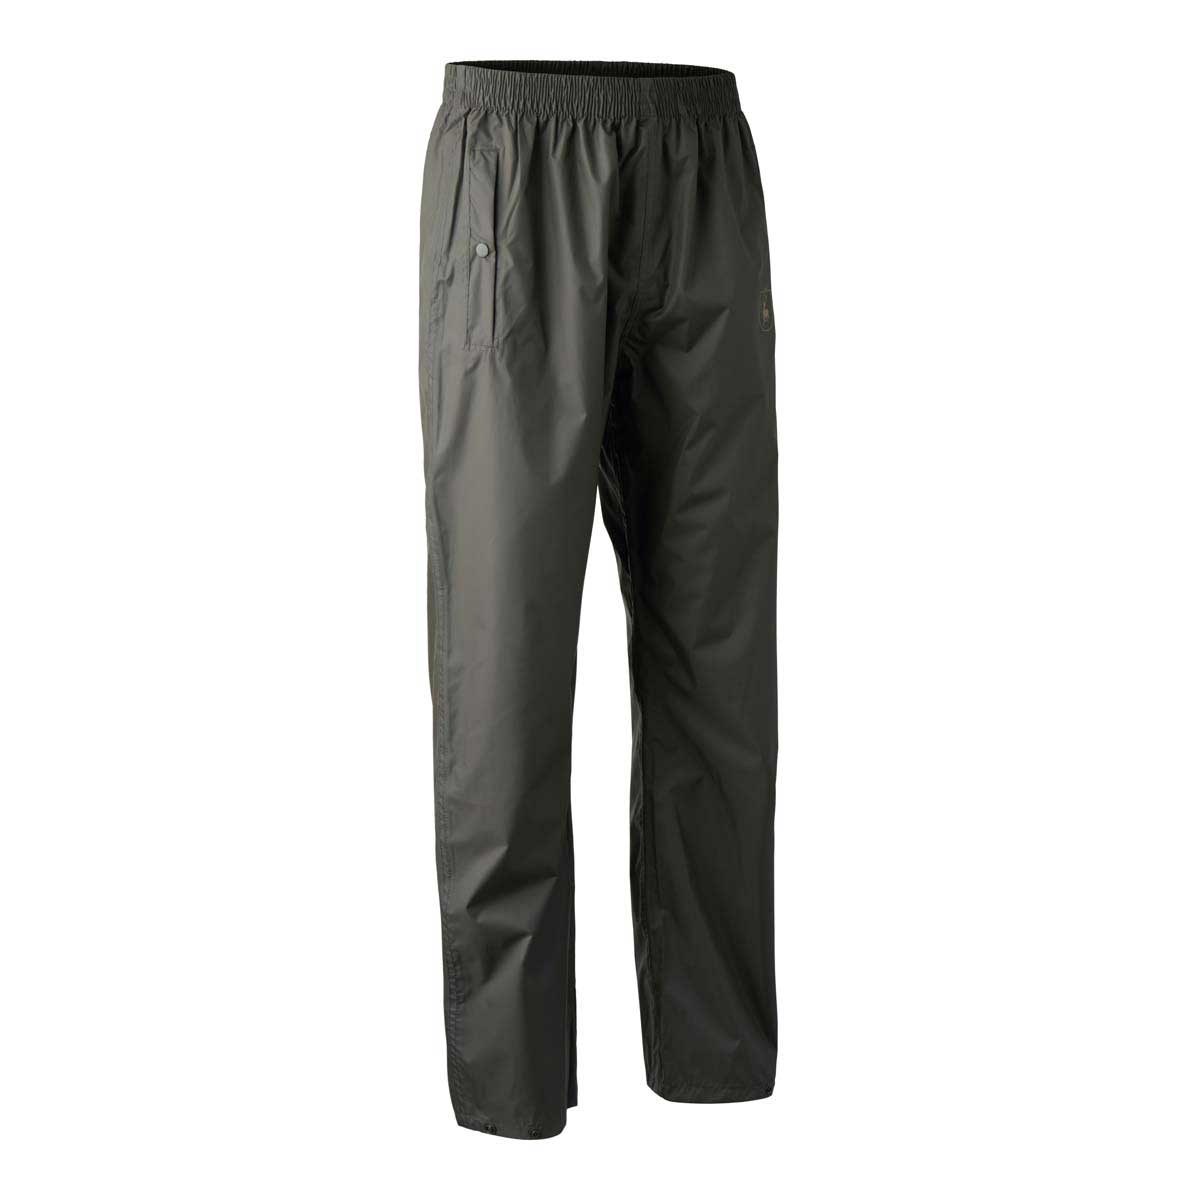 40% OFF DEERHUNTER Survivor Packable Rain Trousers - Size: M/L